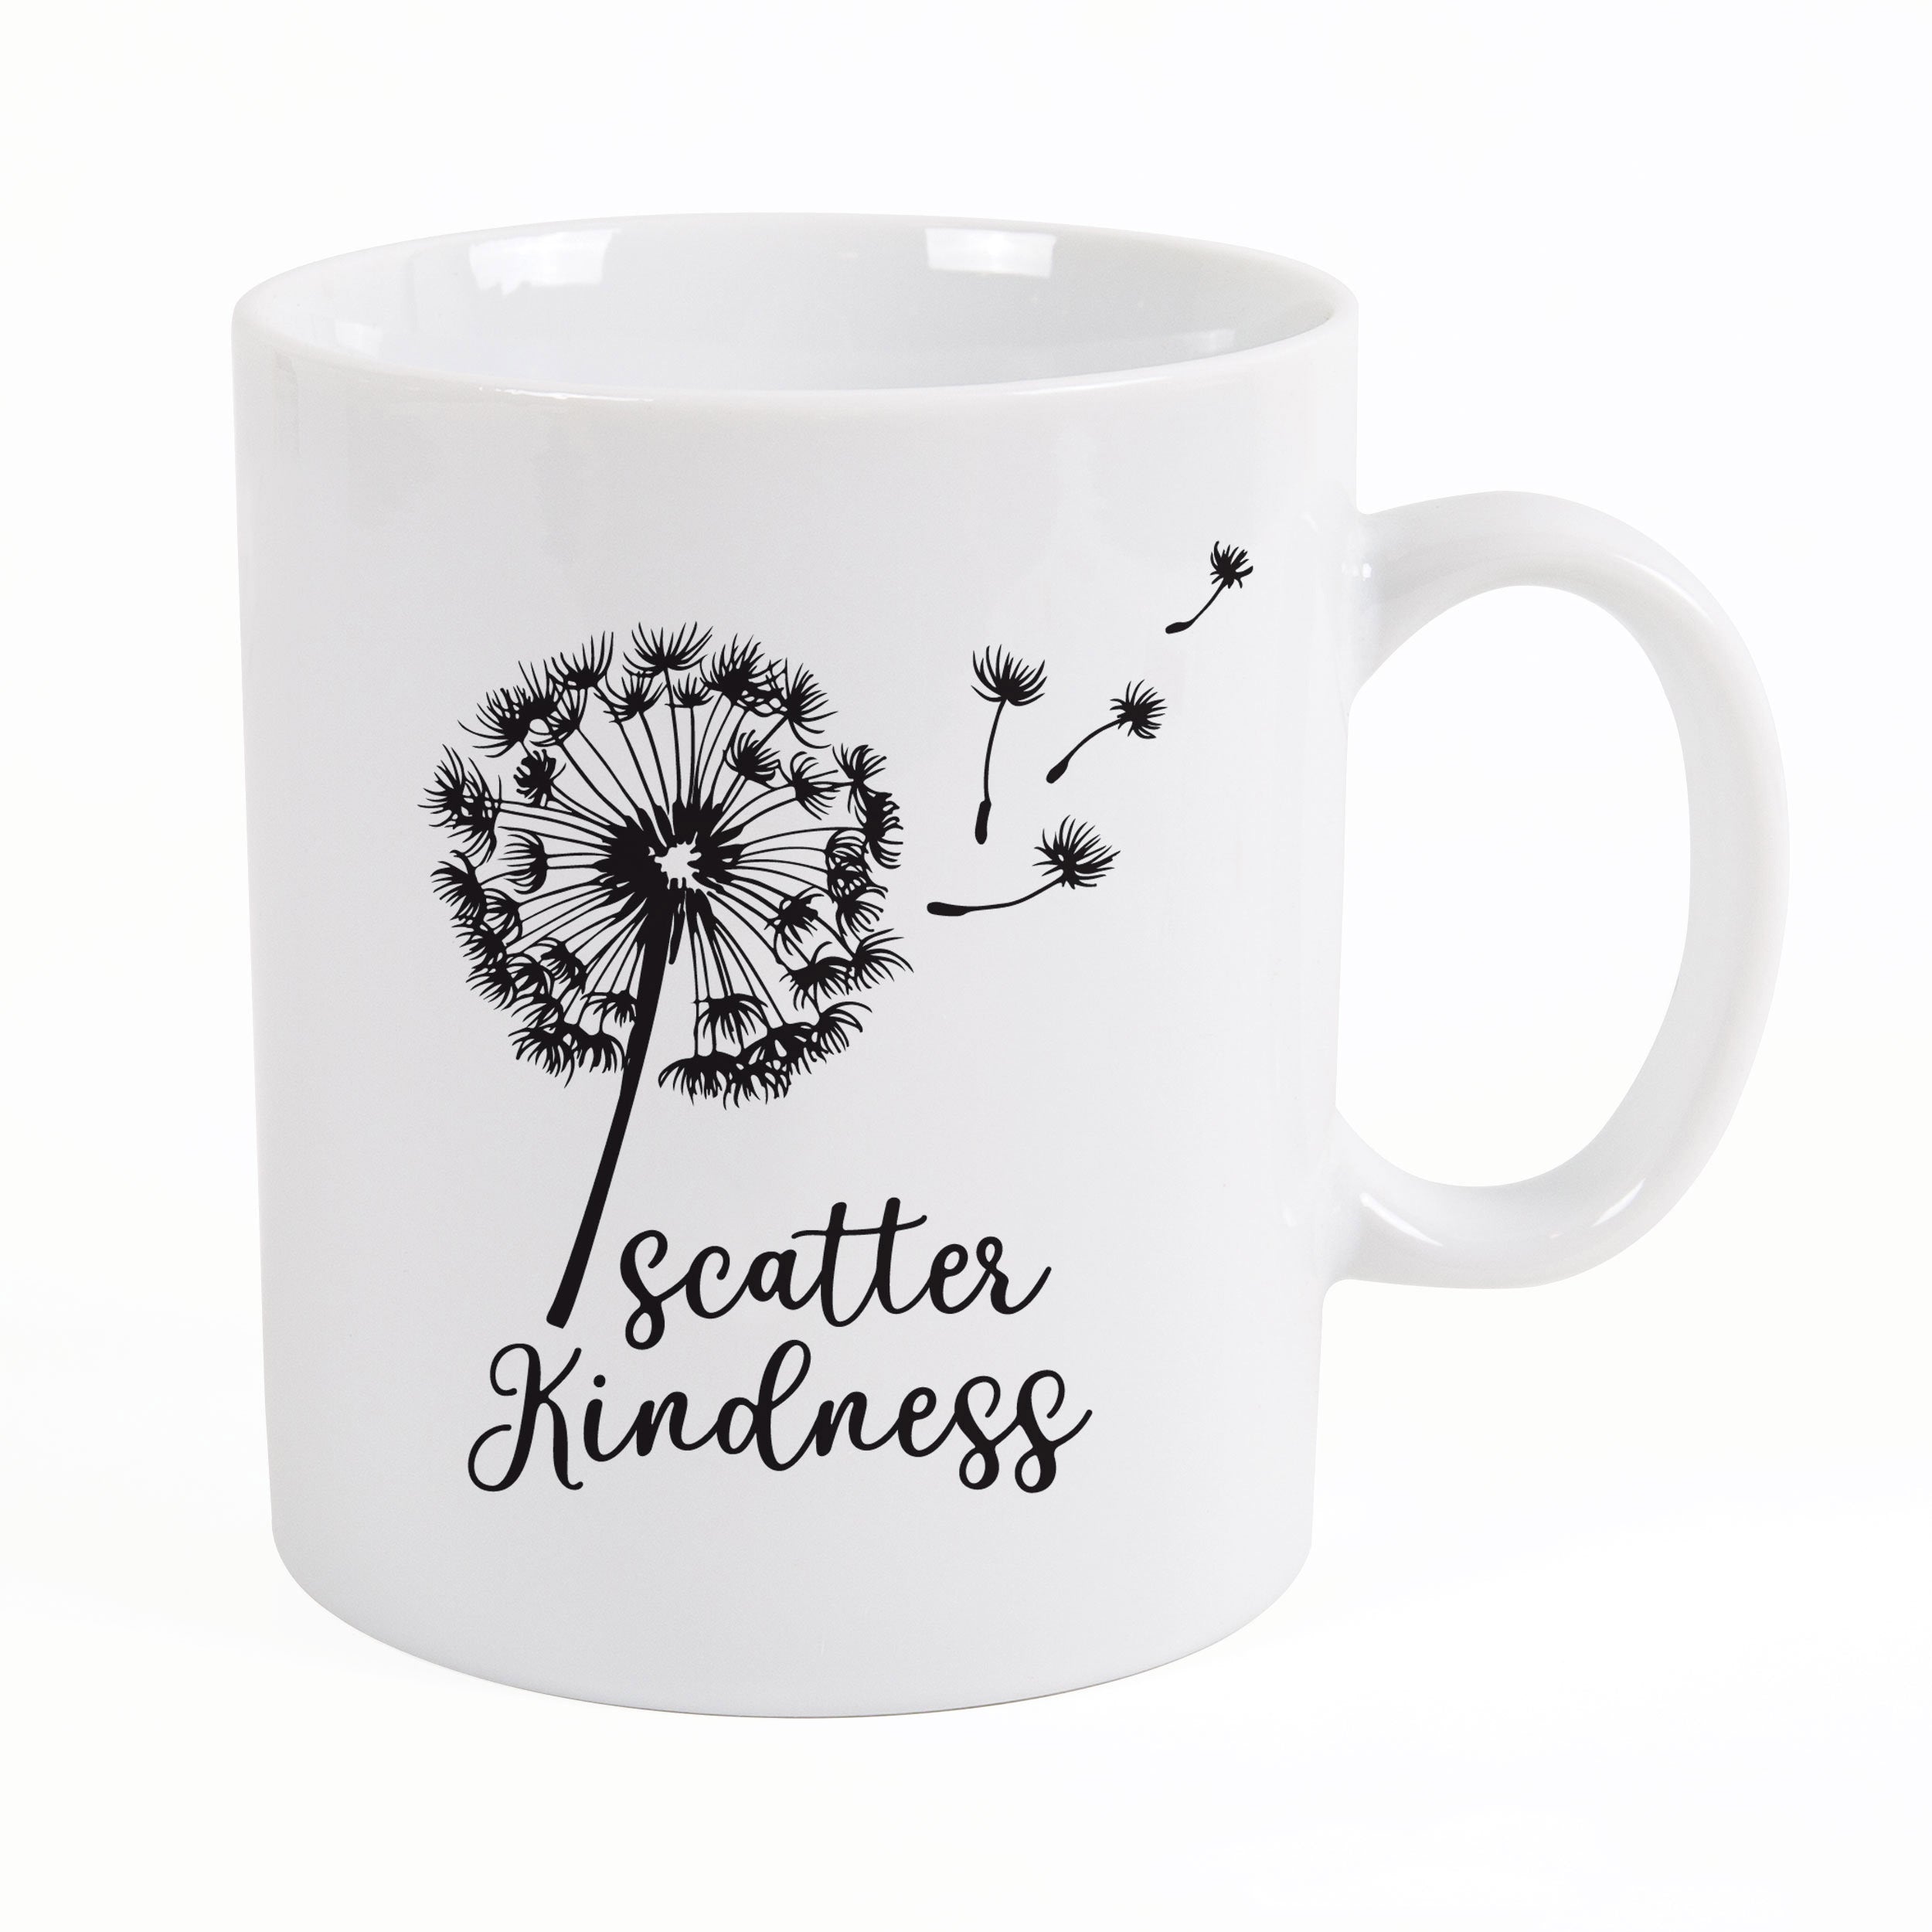 **Scatter Kindness Mug